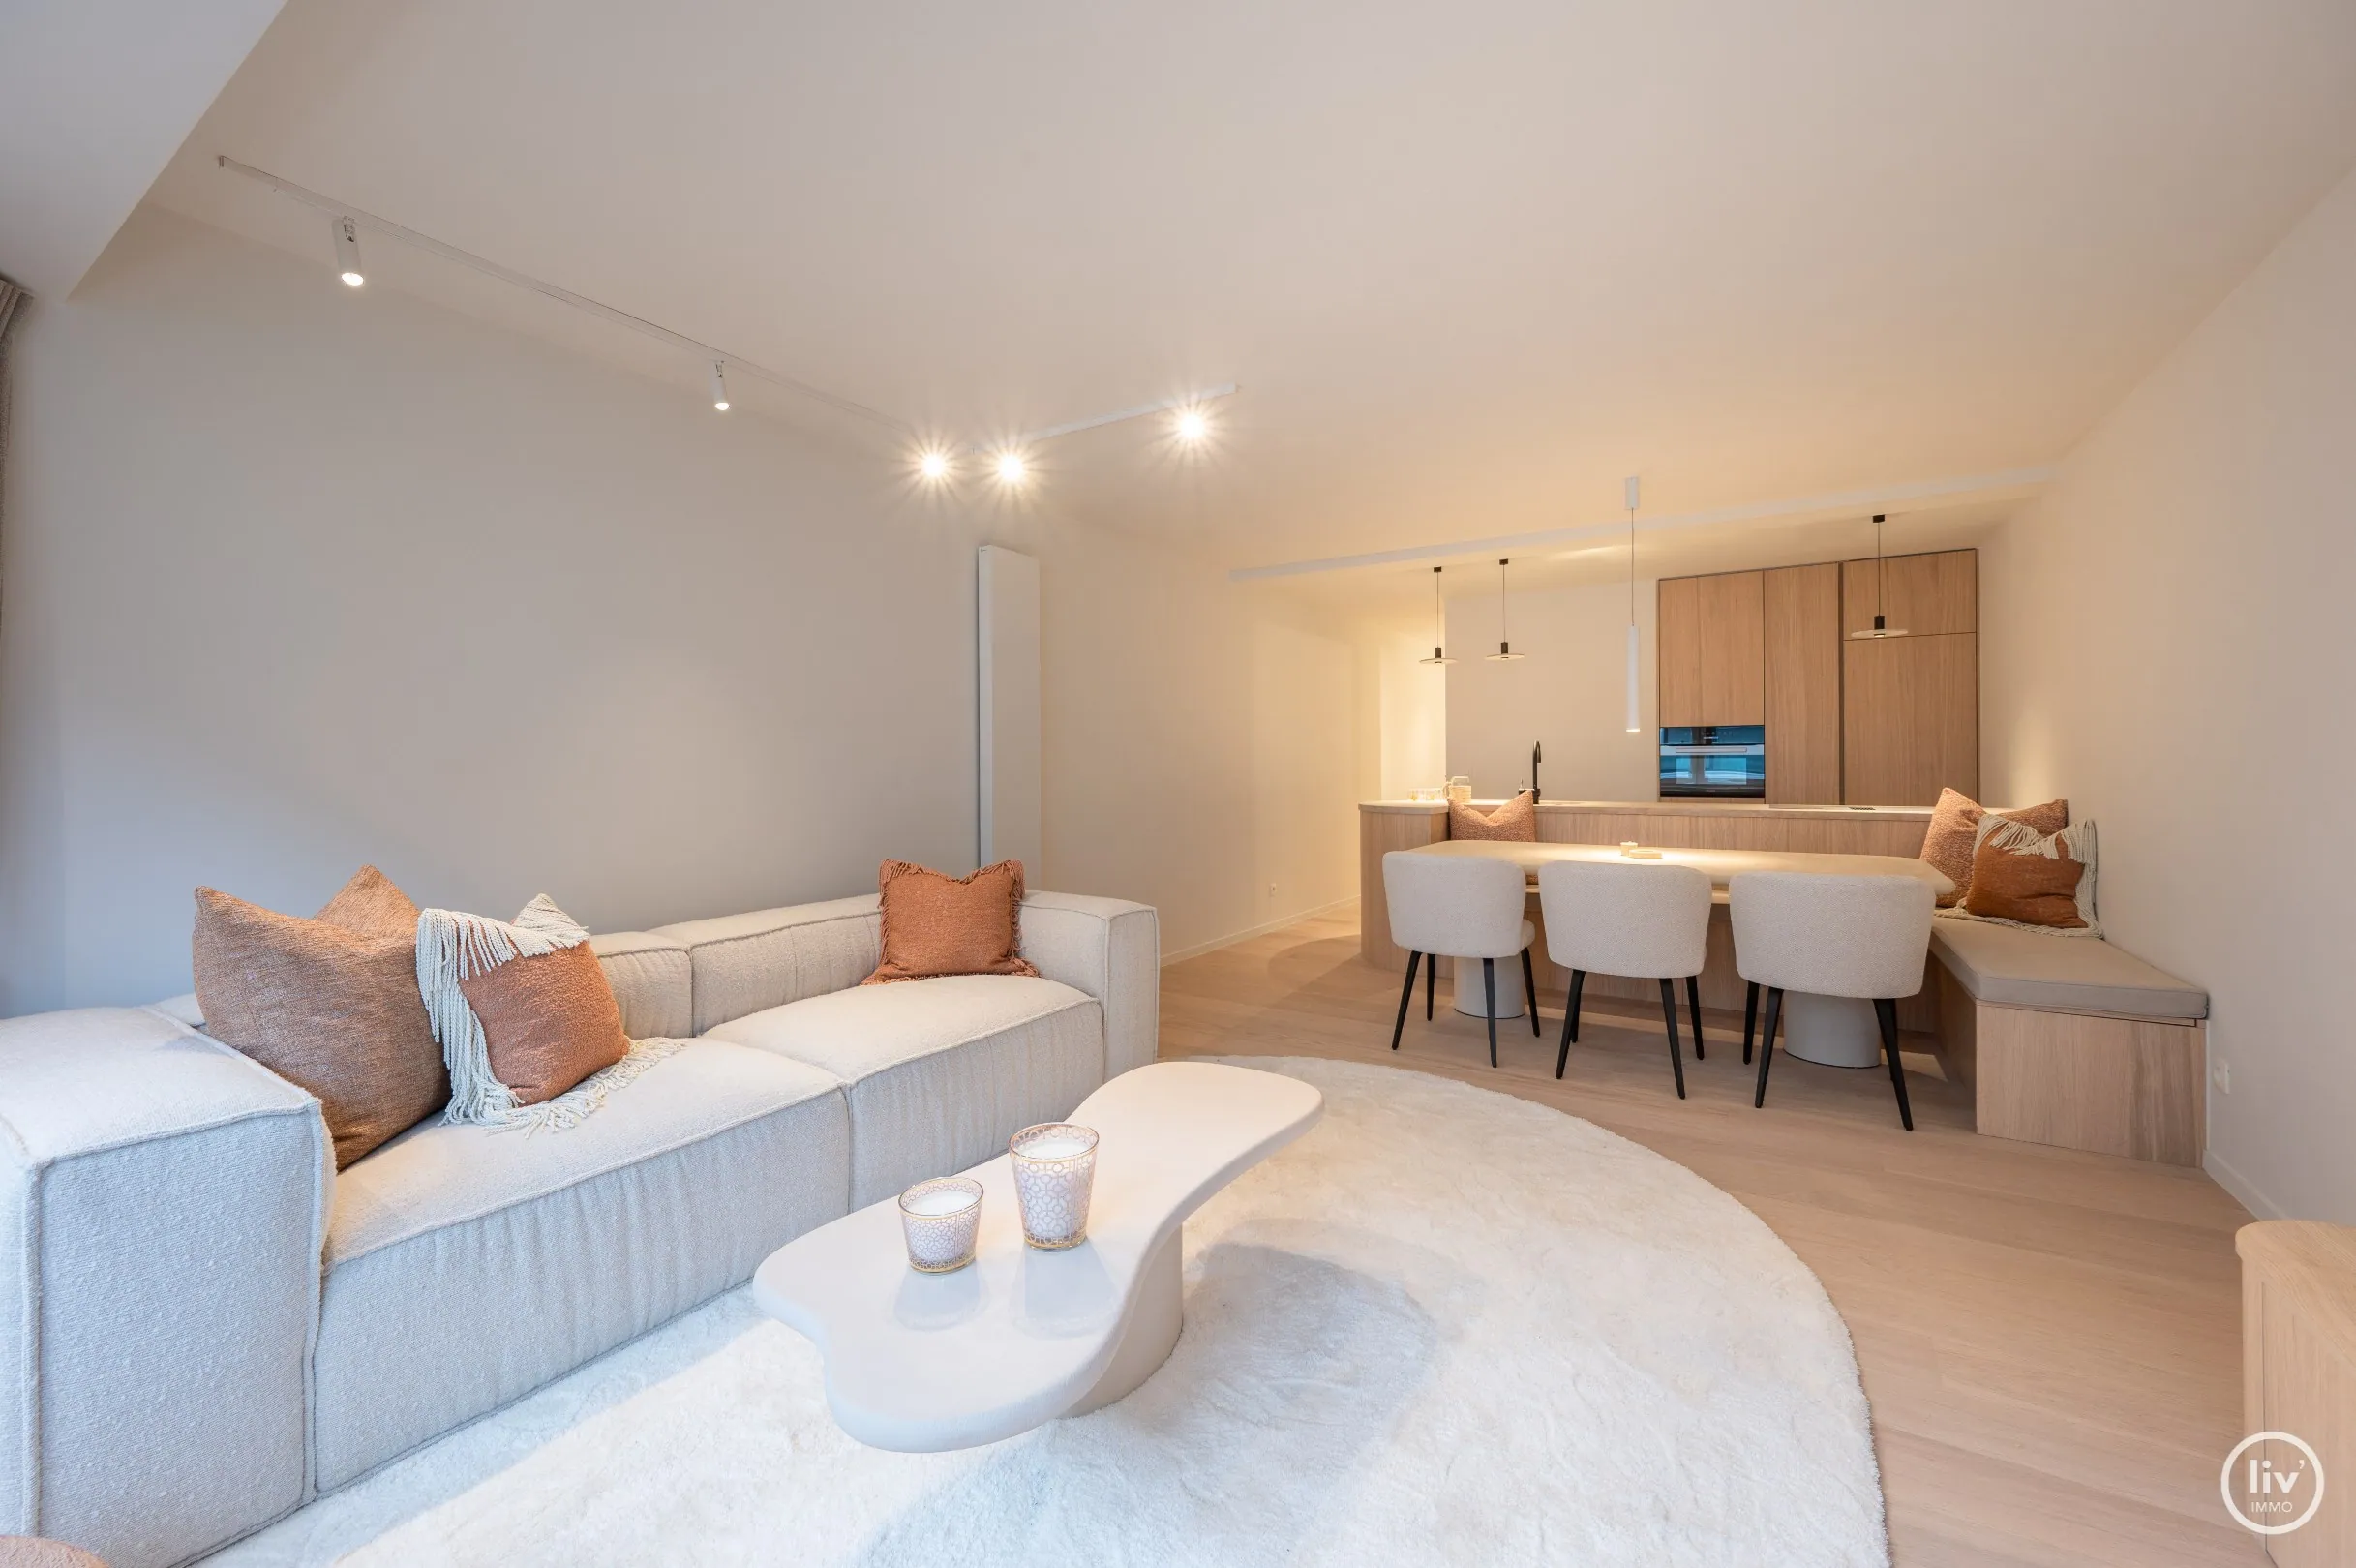 Appartement rénové confortable de 3 chambres, situé au centre de l'avenue Parmentier à Knokke.